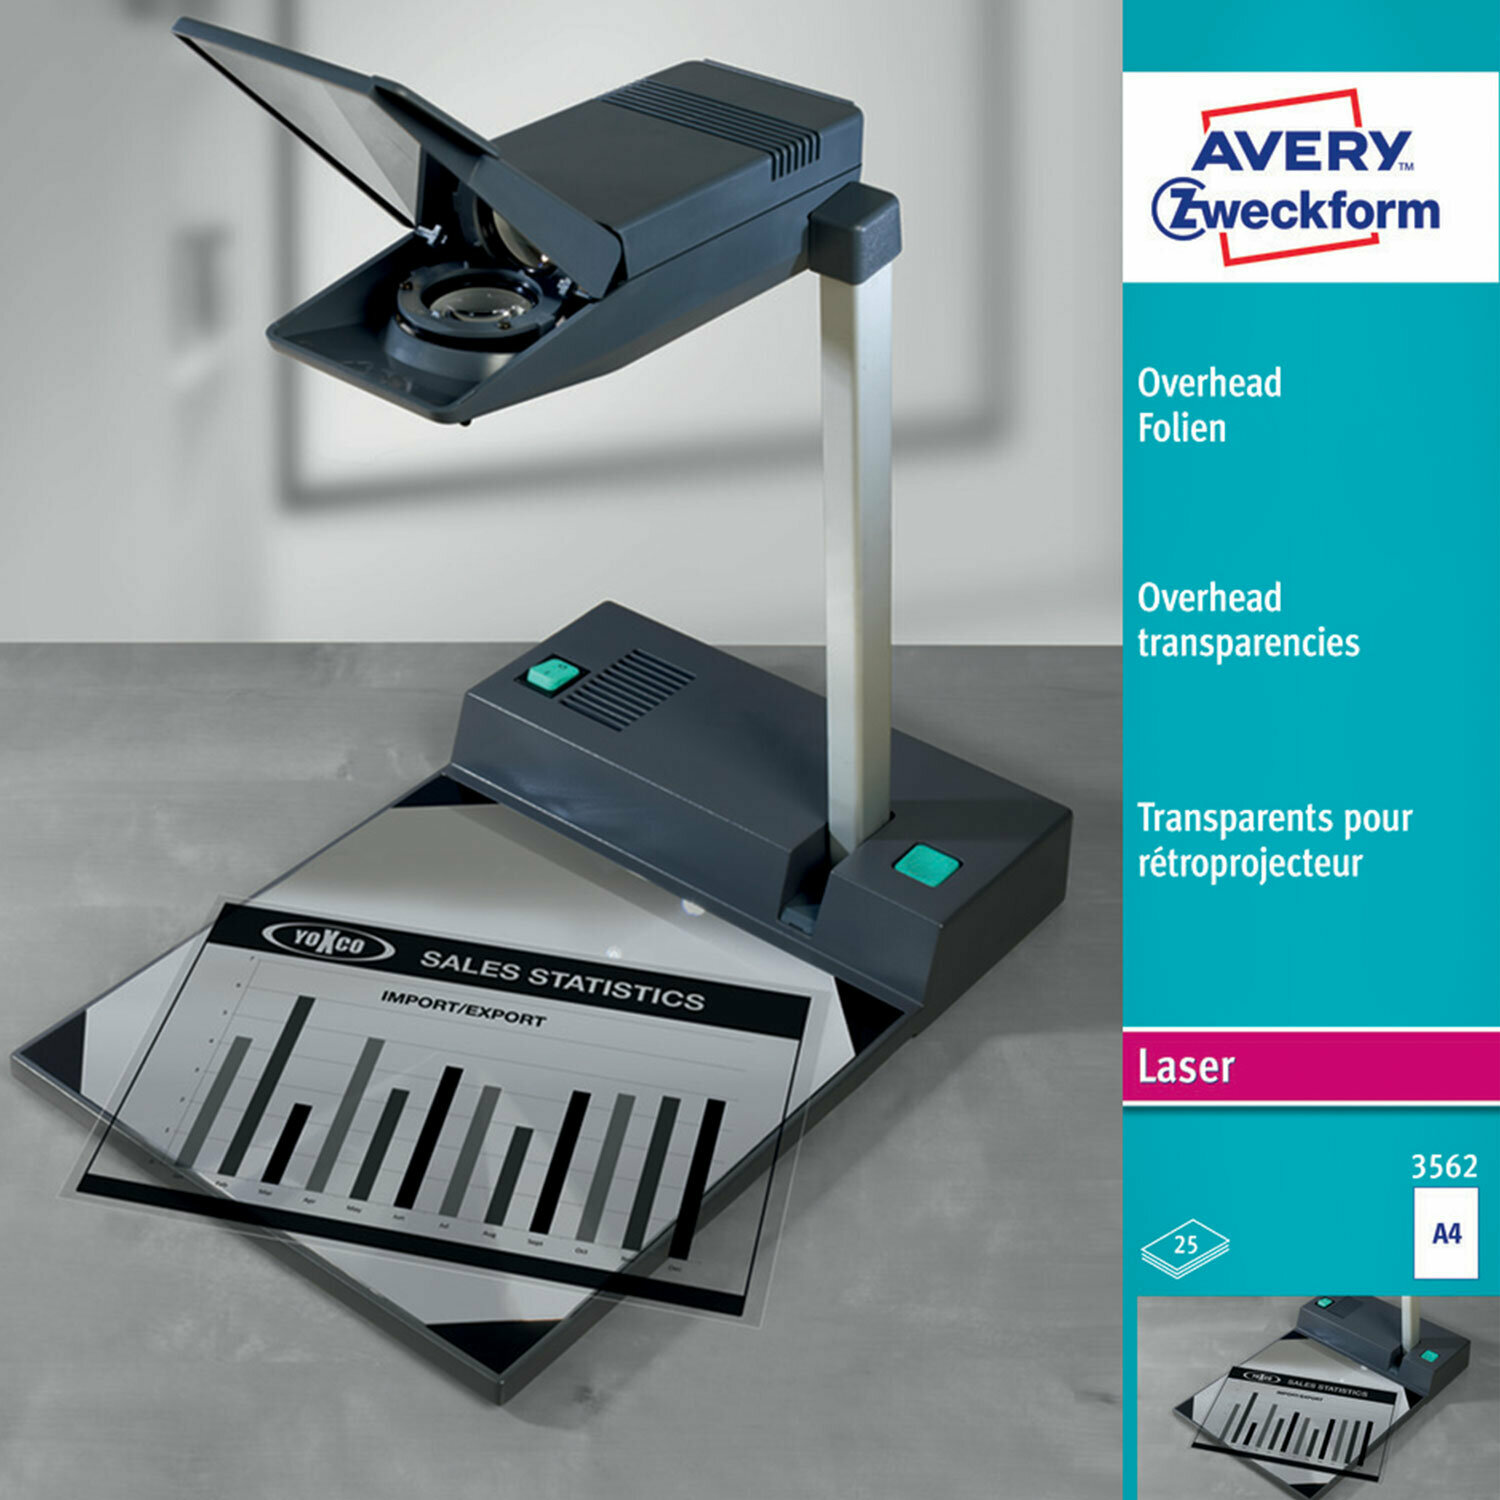 Пленка для проекторов А4 ч/б лазерная печать полиэстер прозрачная 100 мкм 25 листов Avery Zweckform 3562 /Квант продажи 1 ед./